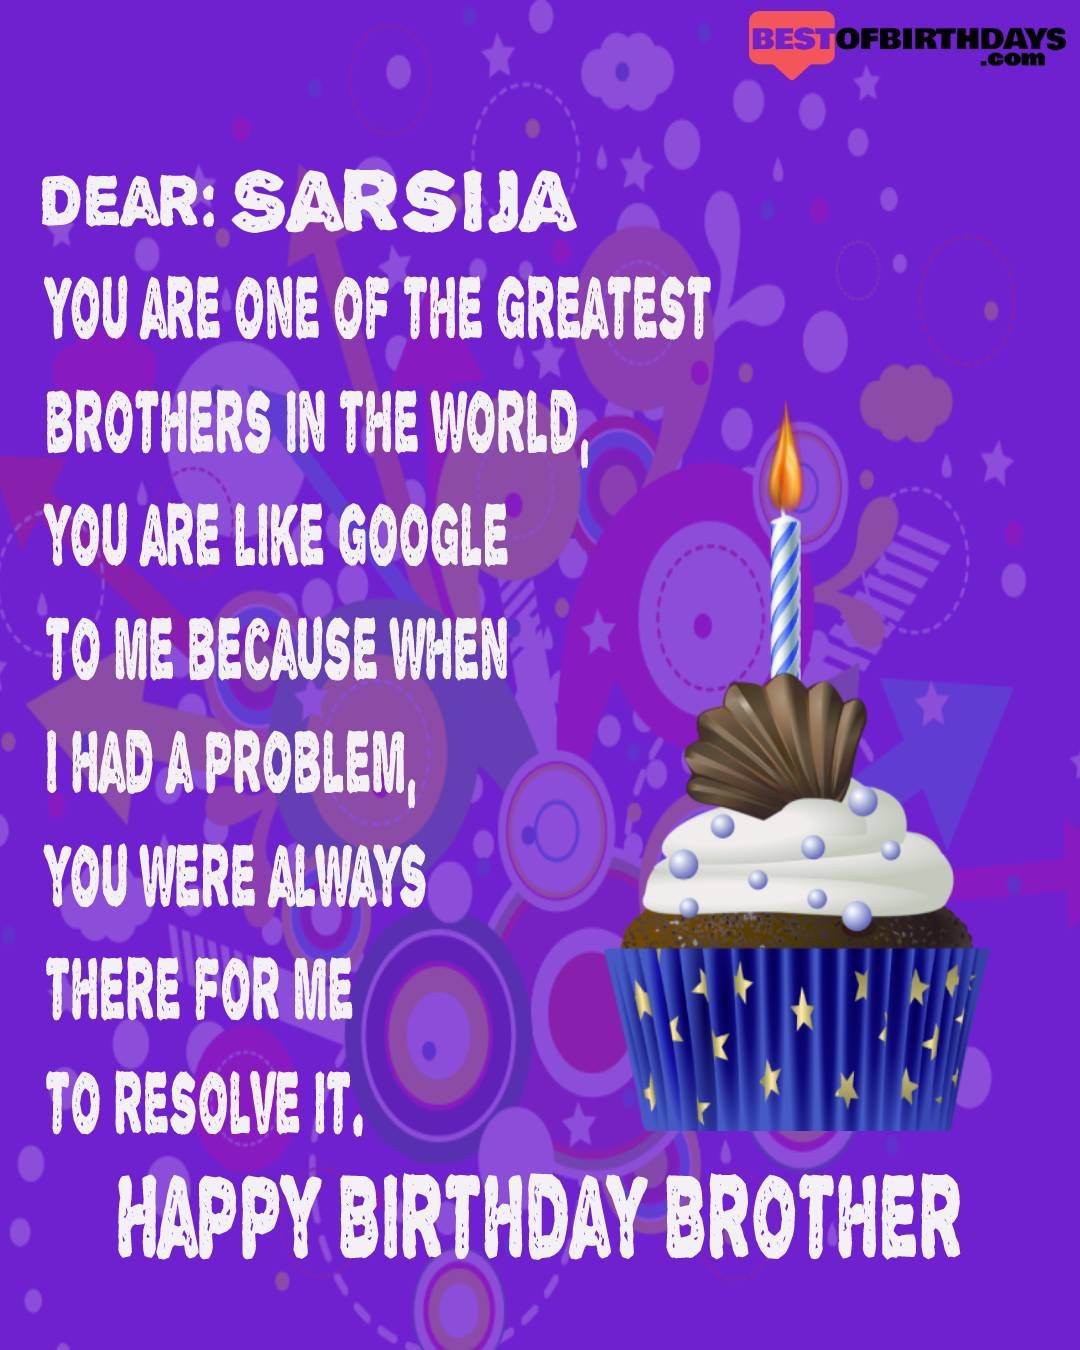 Happy birthday sarsija bhai brother bro